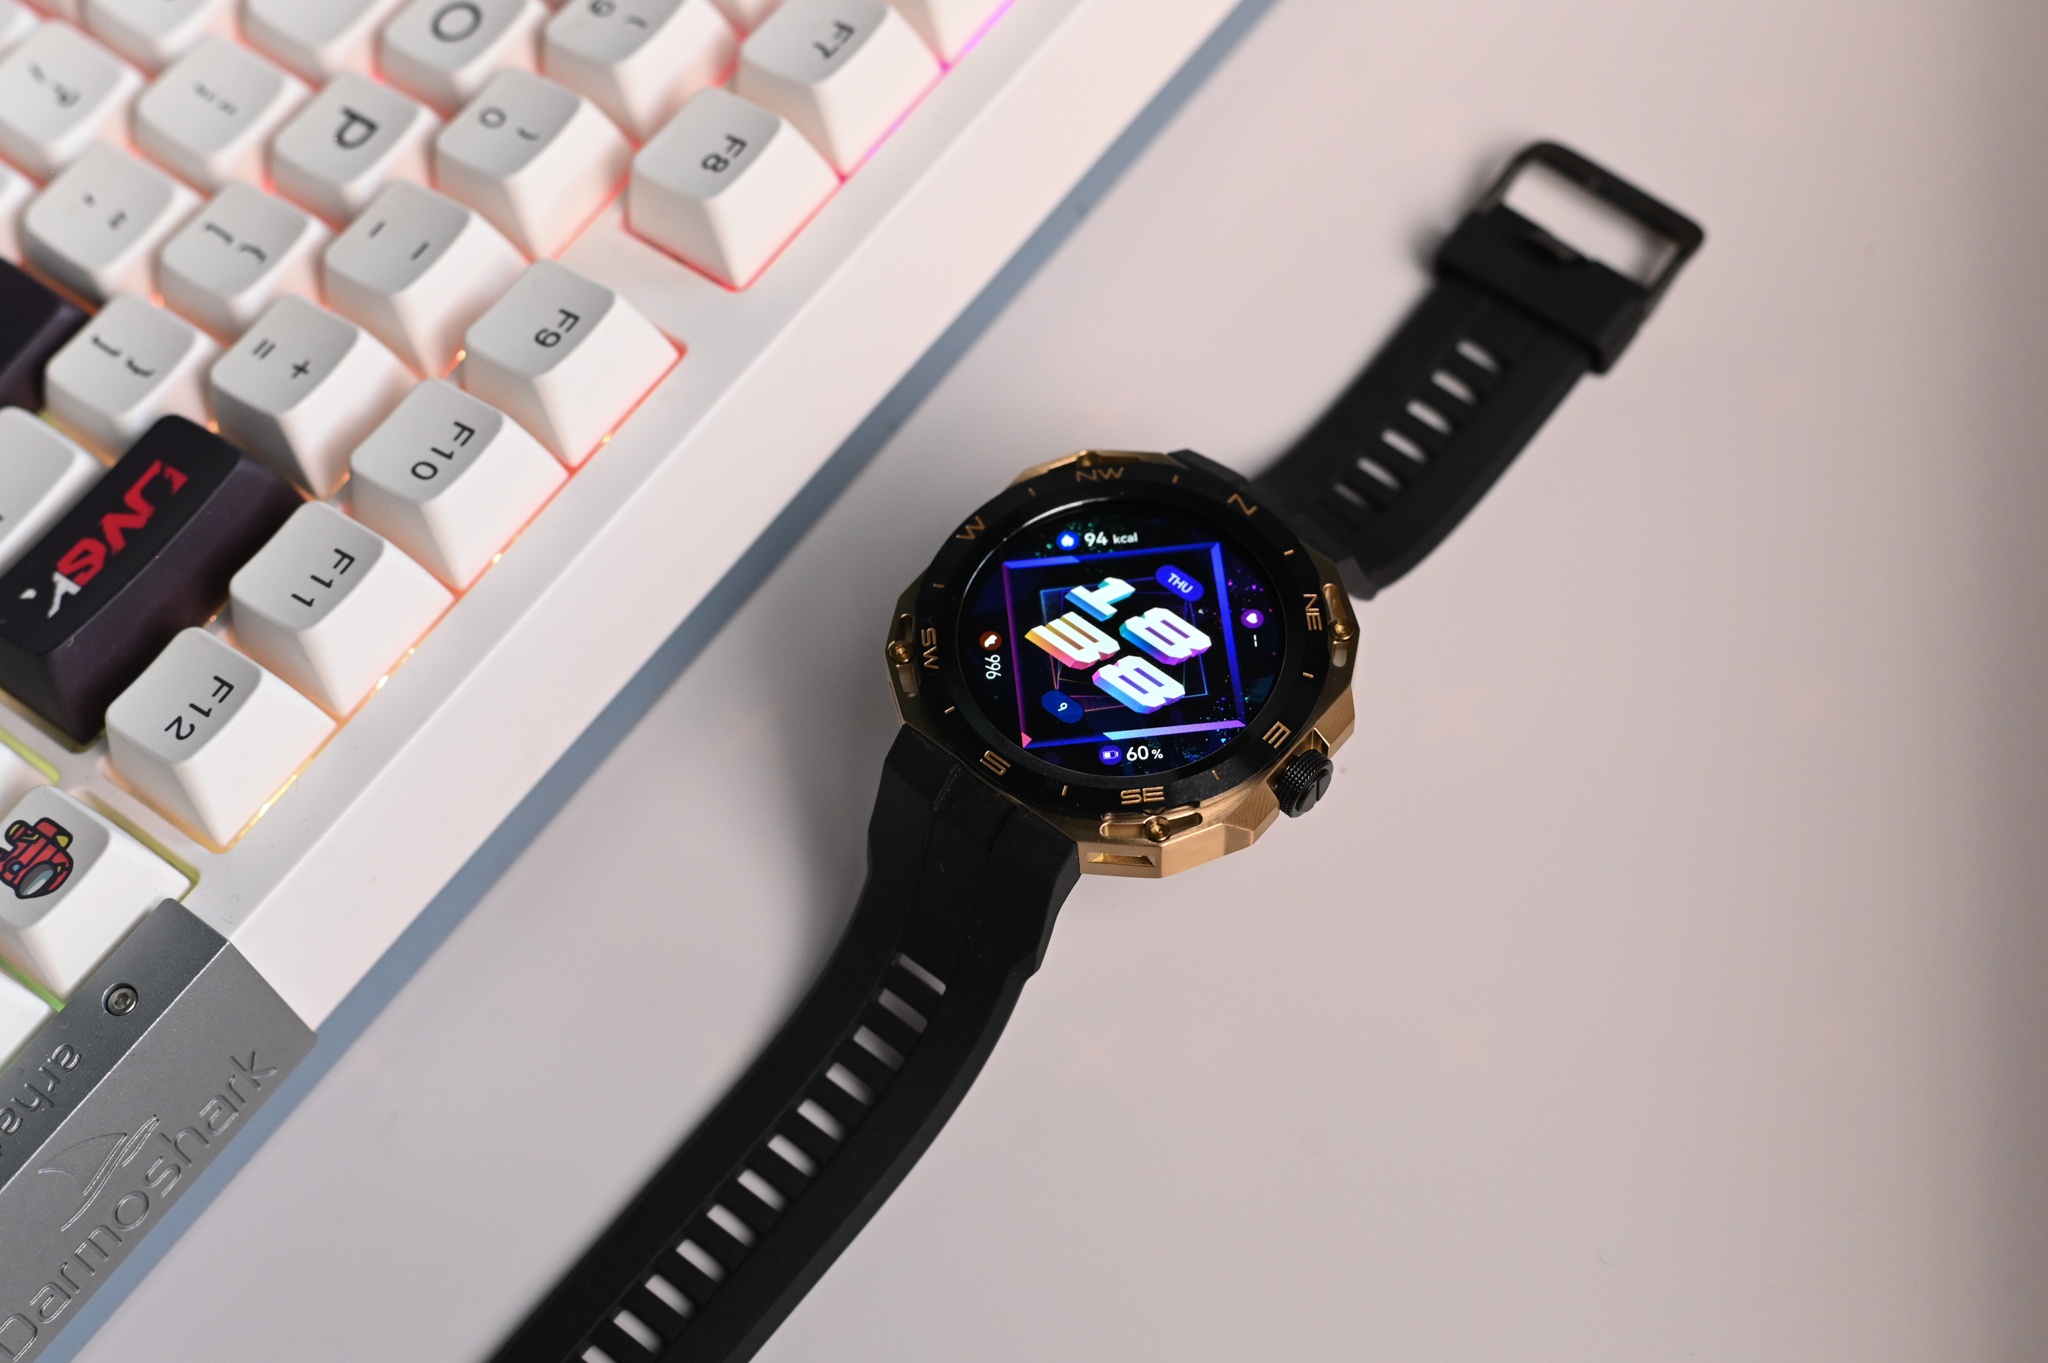 Mẫu smartwatch có thể thay đổi ngoại hình - ảnh 4